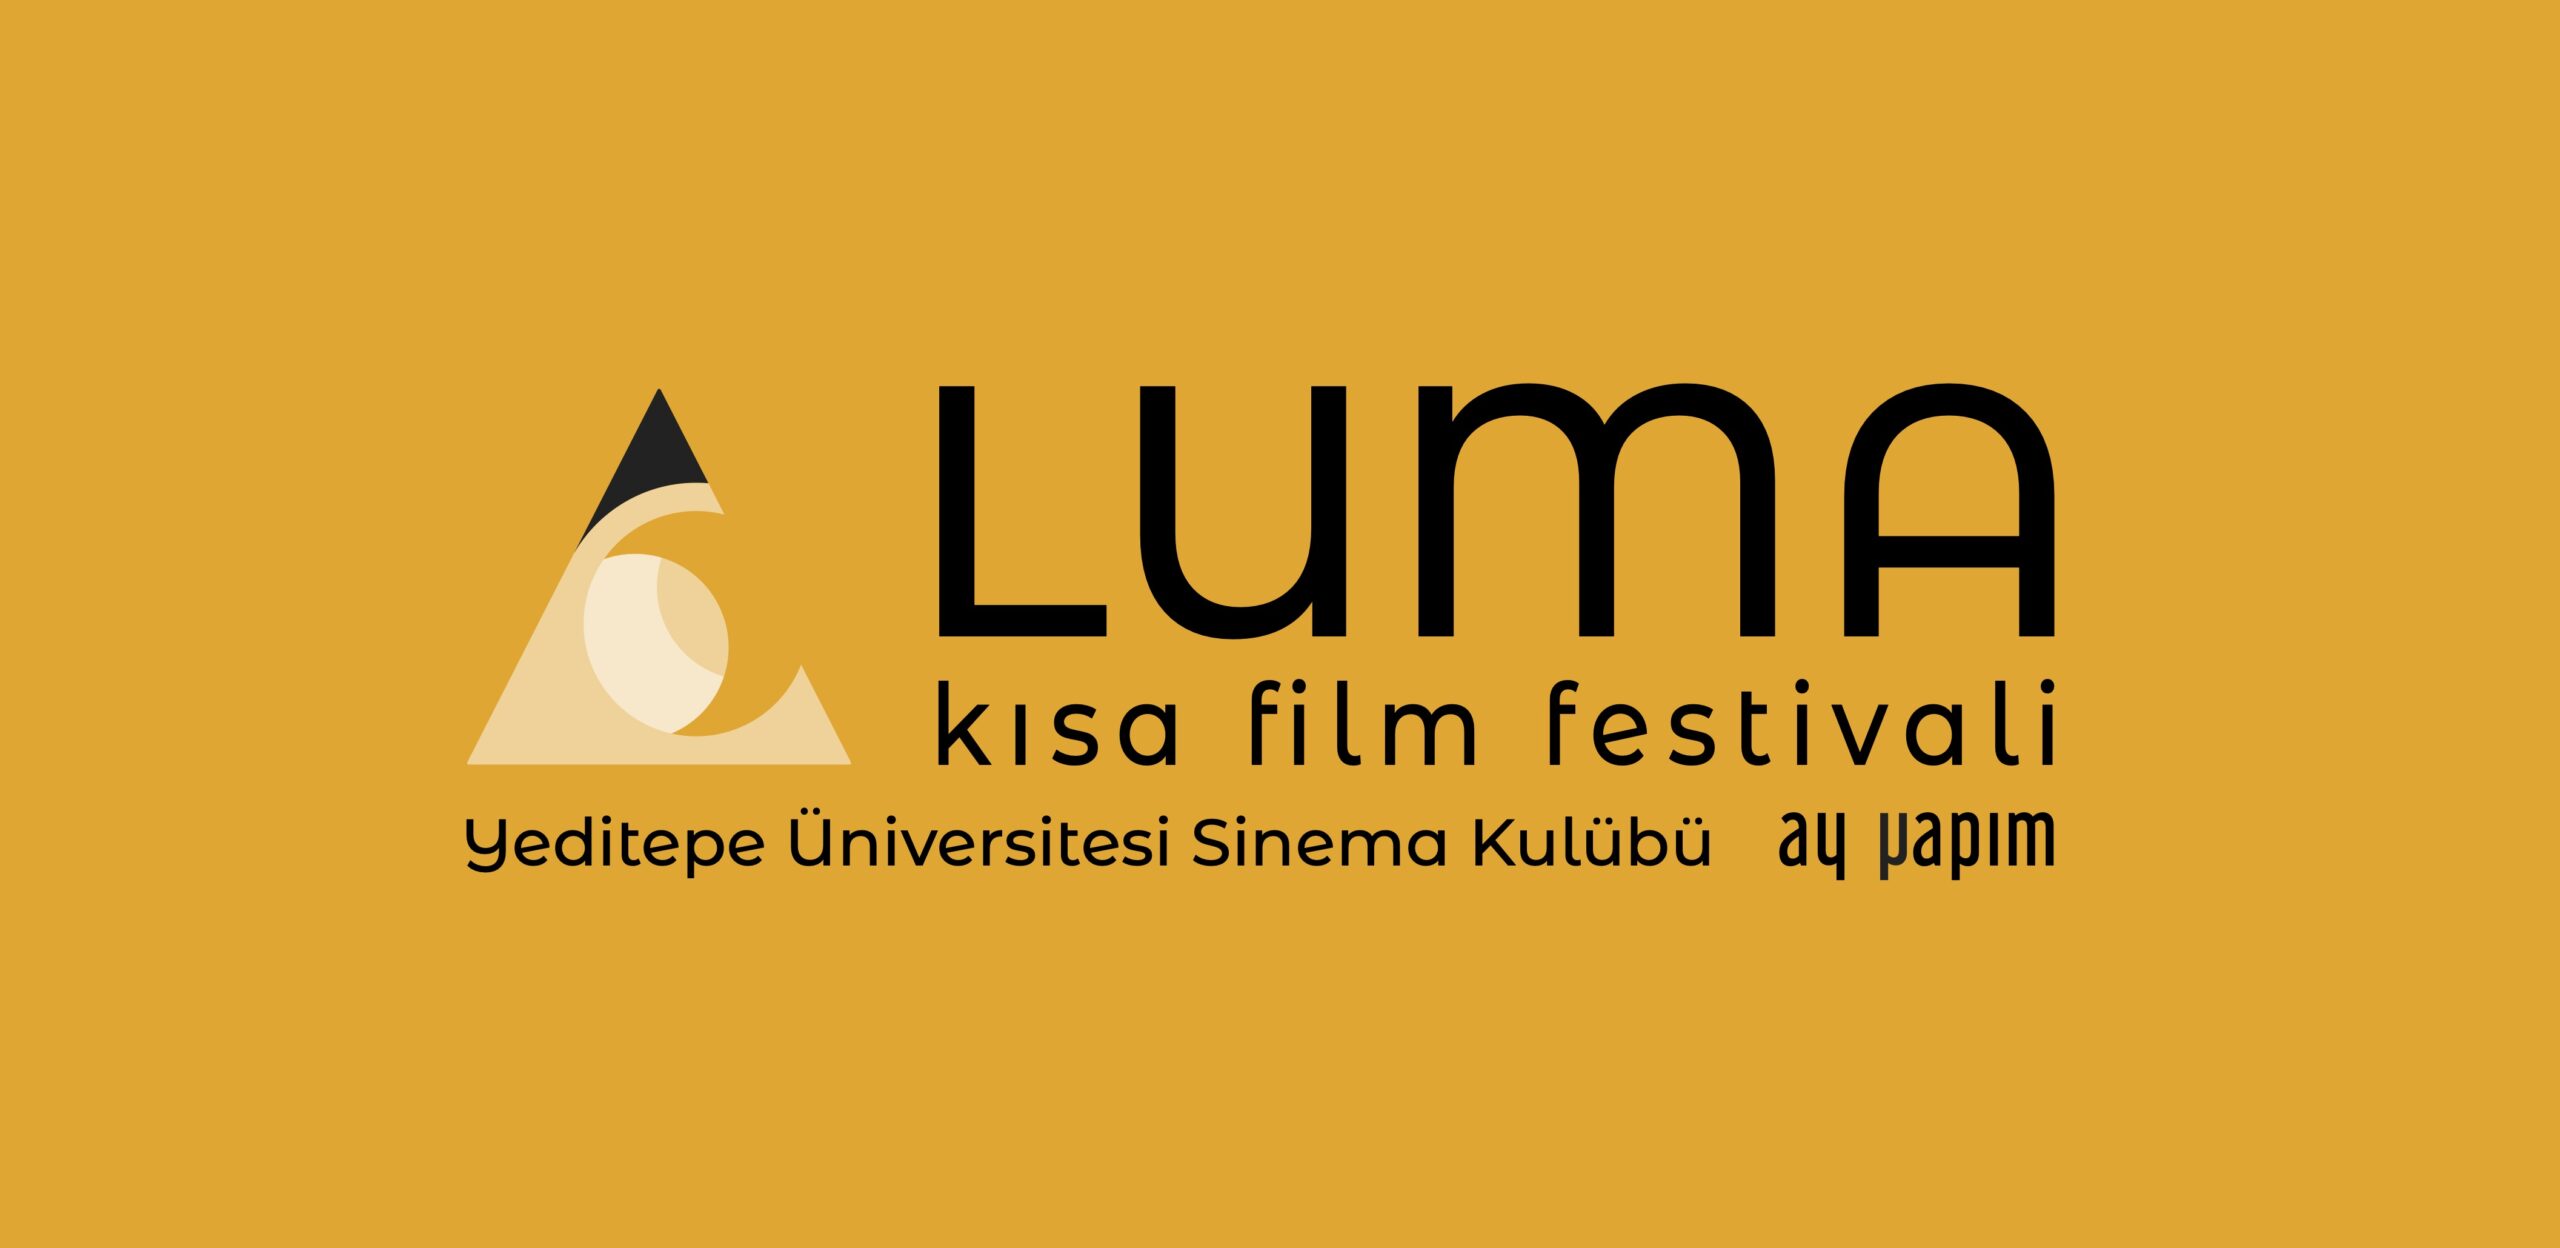  Luma Kısa Film Festivali, 24-26 Mayıs tarihleri arasında Yeditepe Üniversitesi’nde gerçekleştirilecek